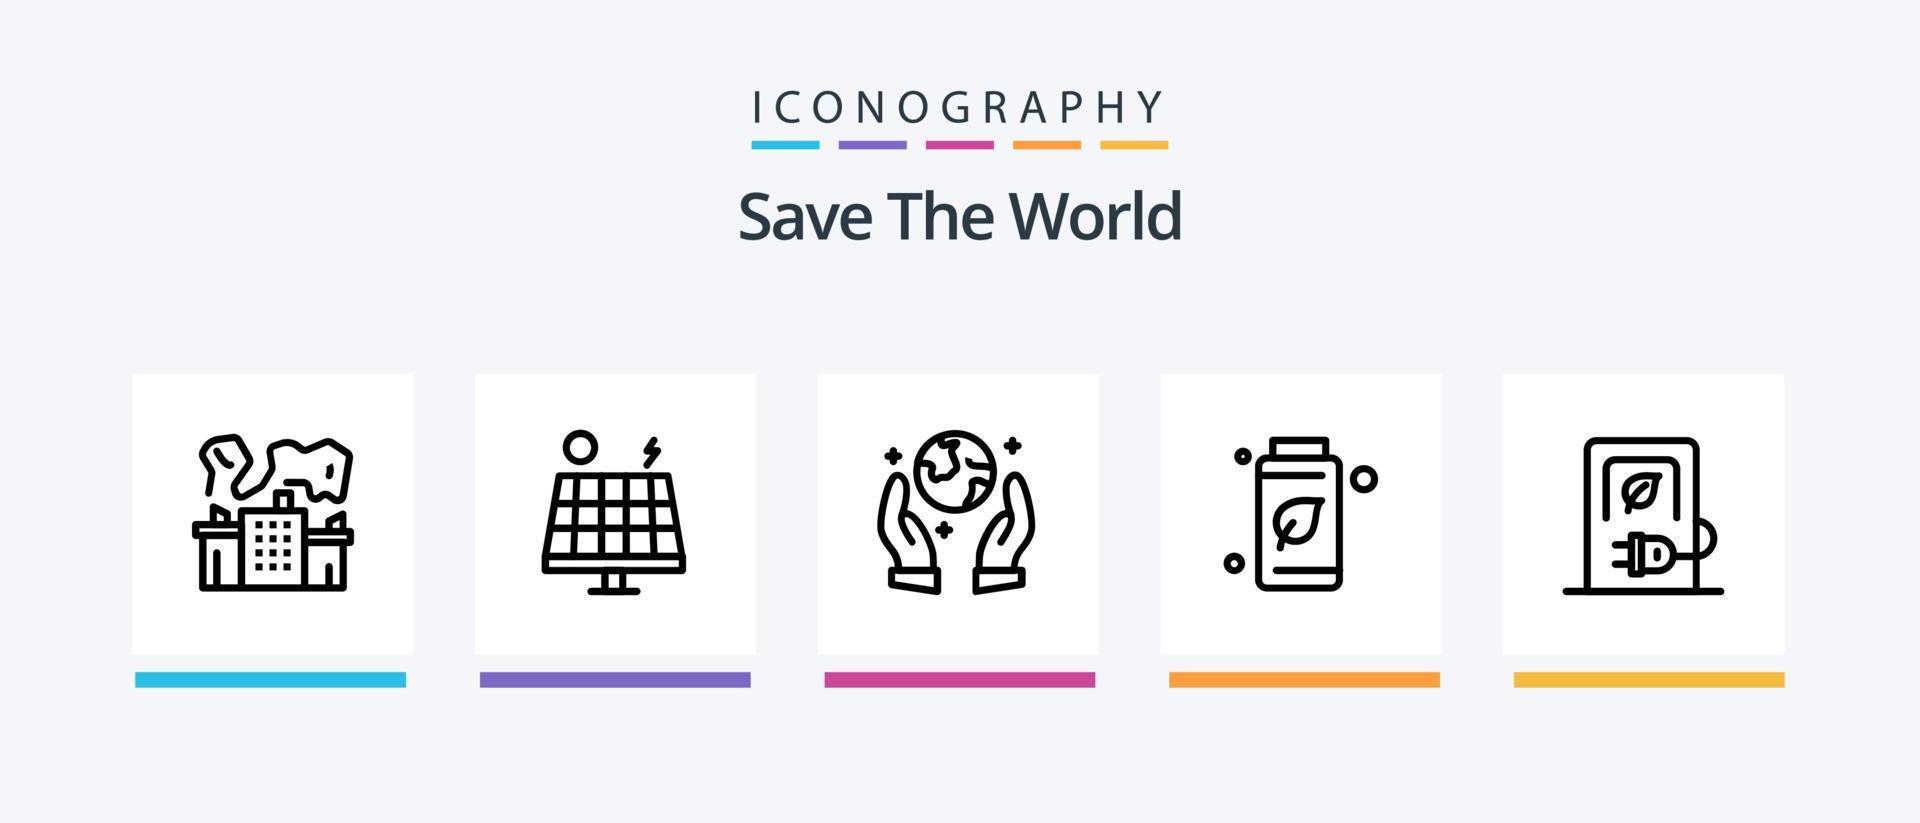 salva el paquete de iconos de la línea mundial 5 que incluye energía. ahorrar. fumar. mundo. corazón. diseño de iconos creativos vector